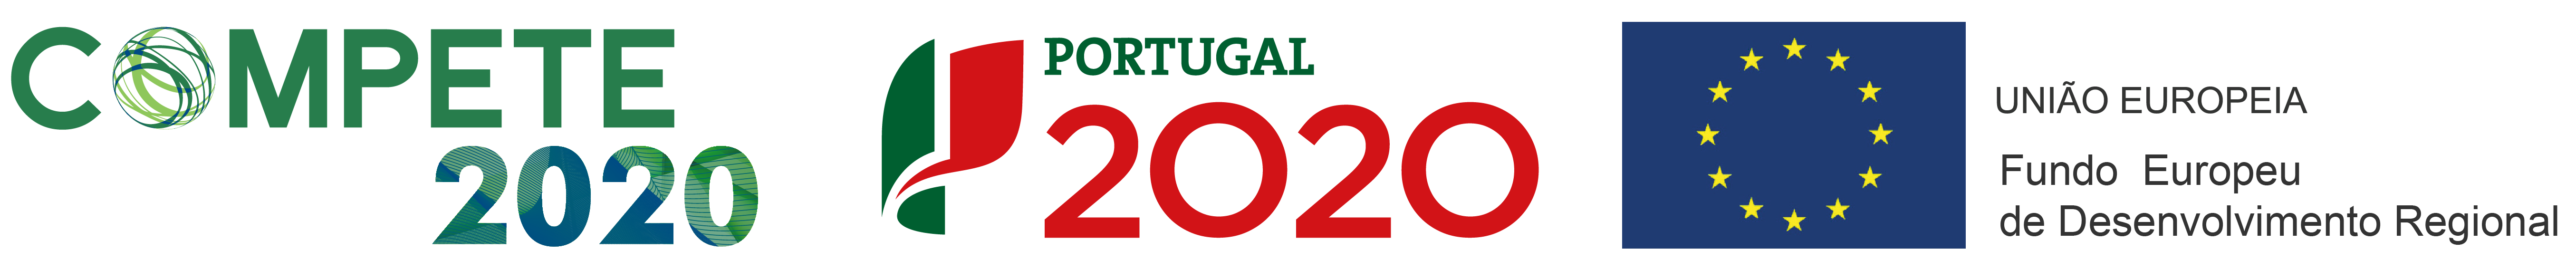 FCT Portugal 2020 | EU